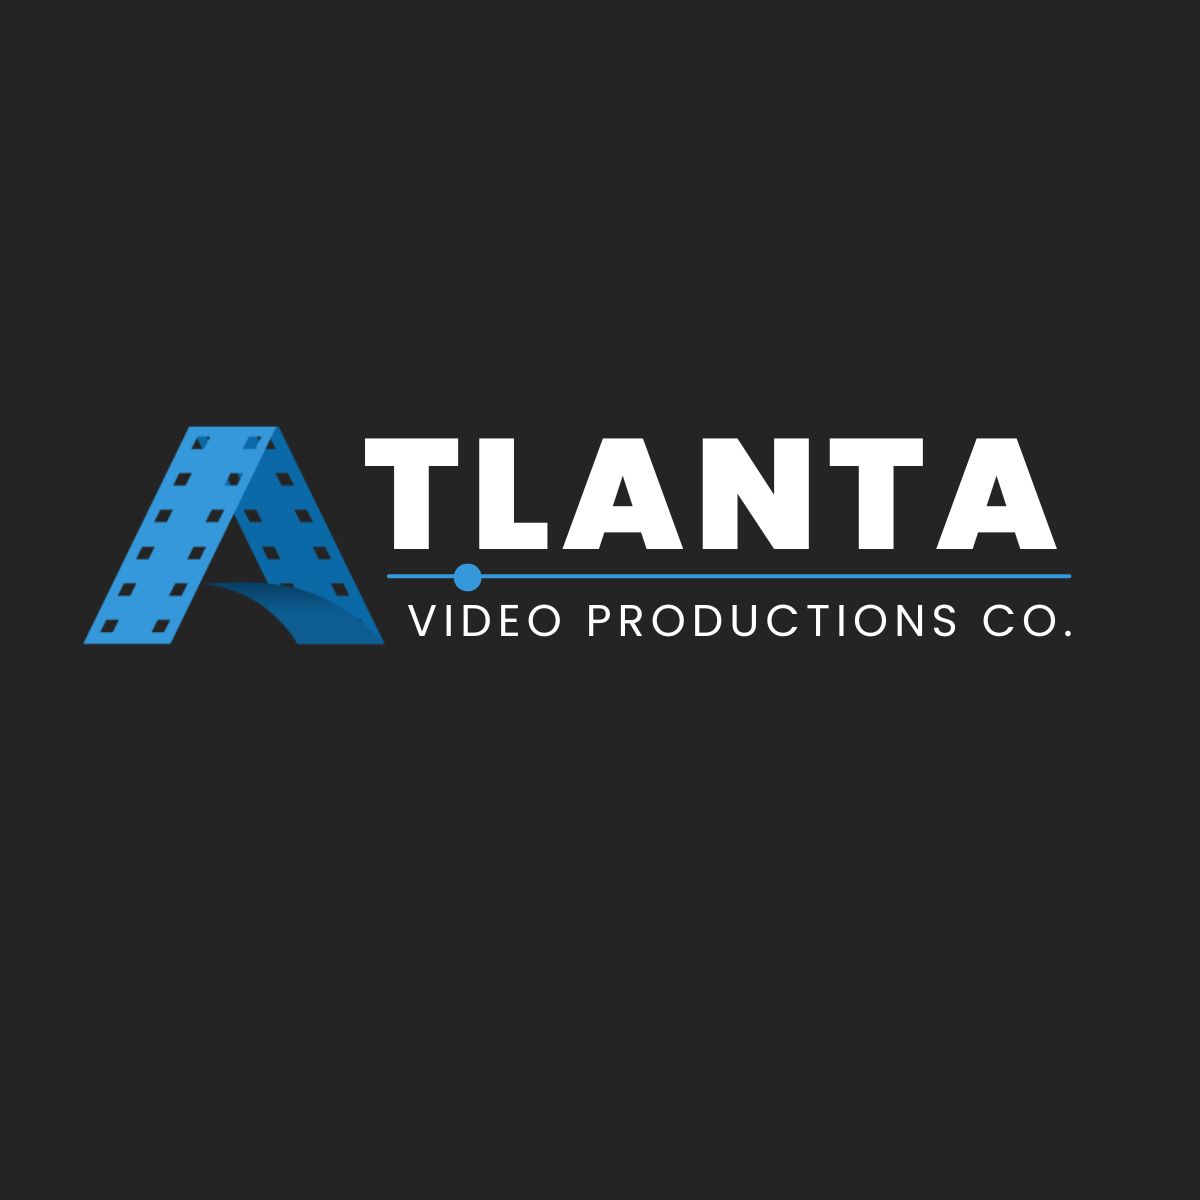 Atlanta-Video-Productions-Company-678-839-9953.jpg